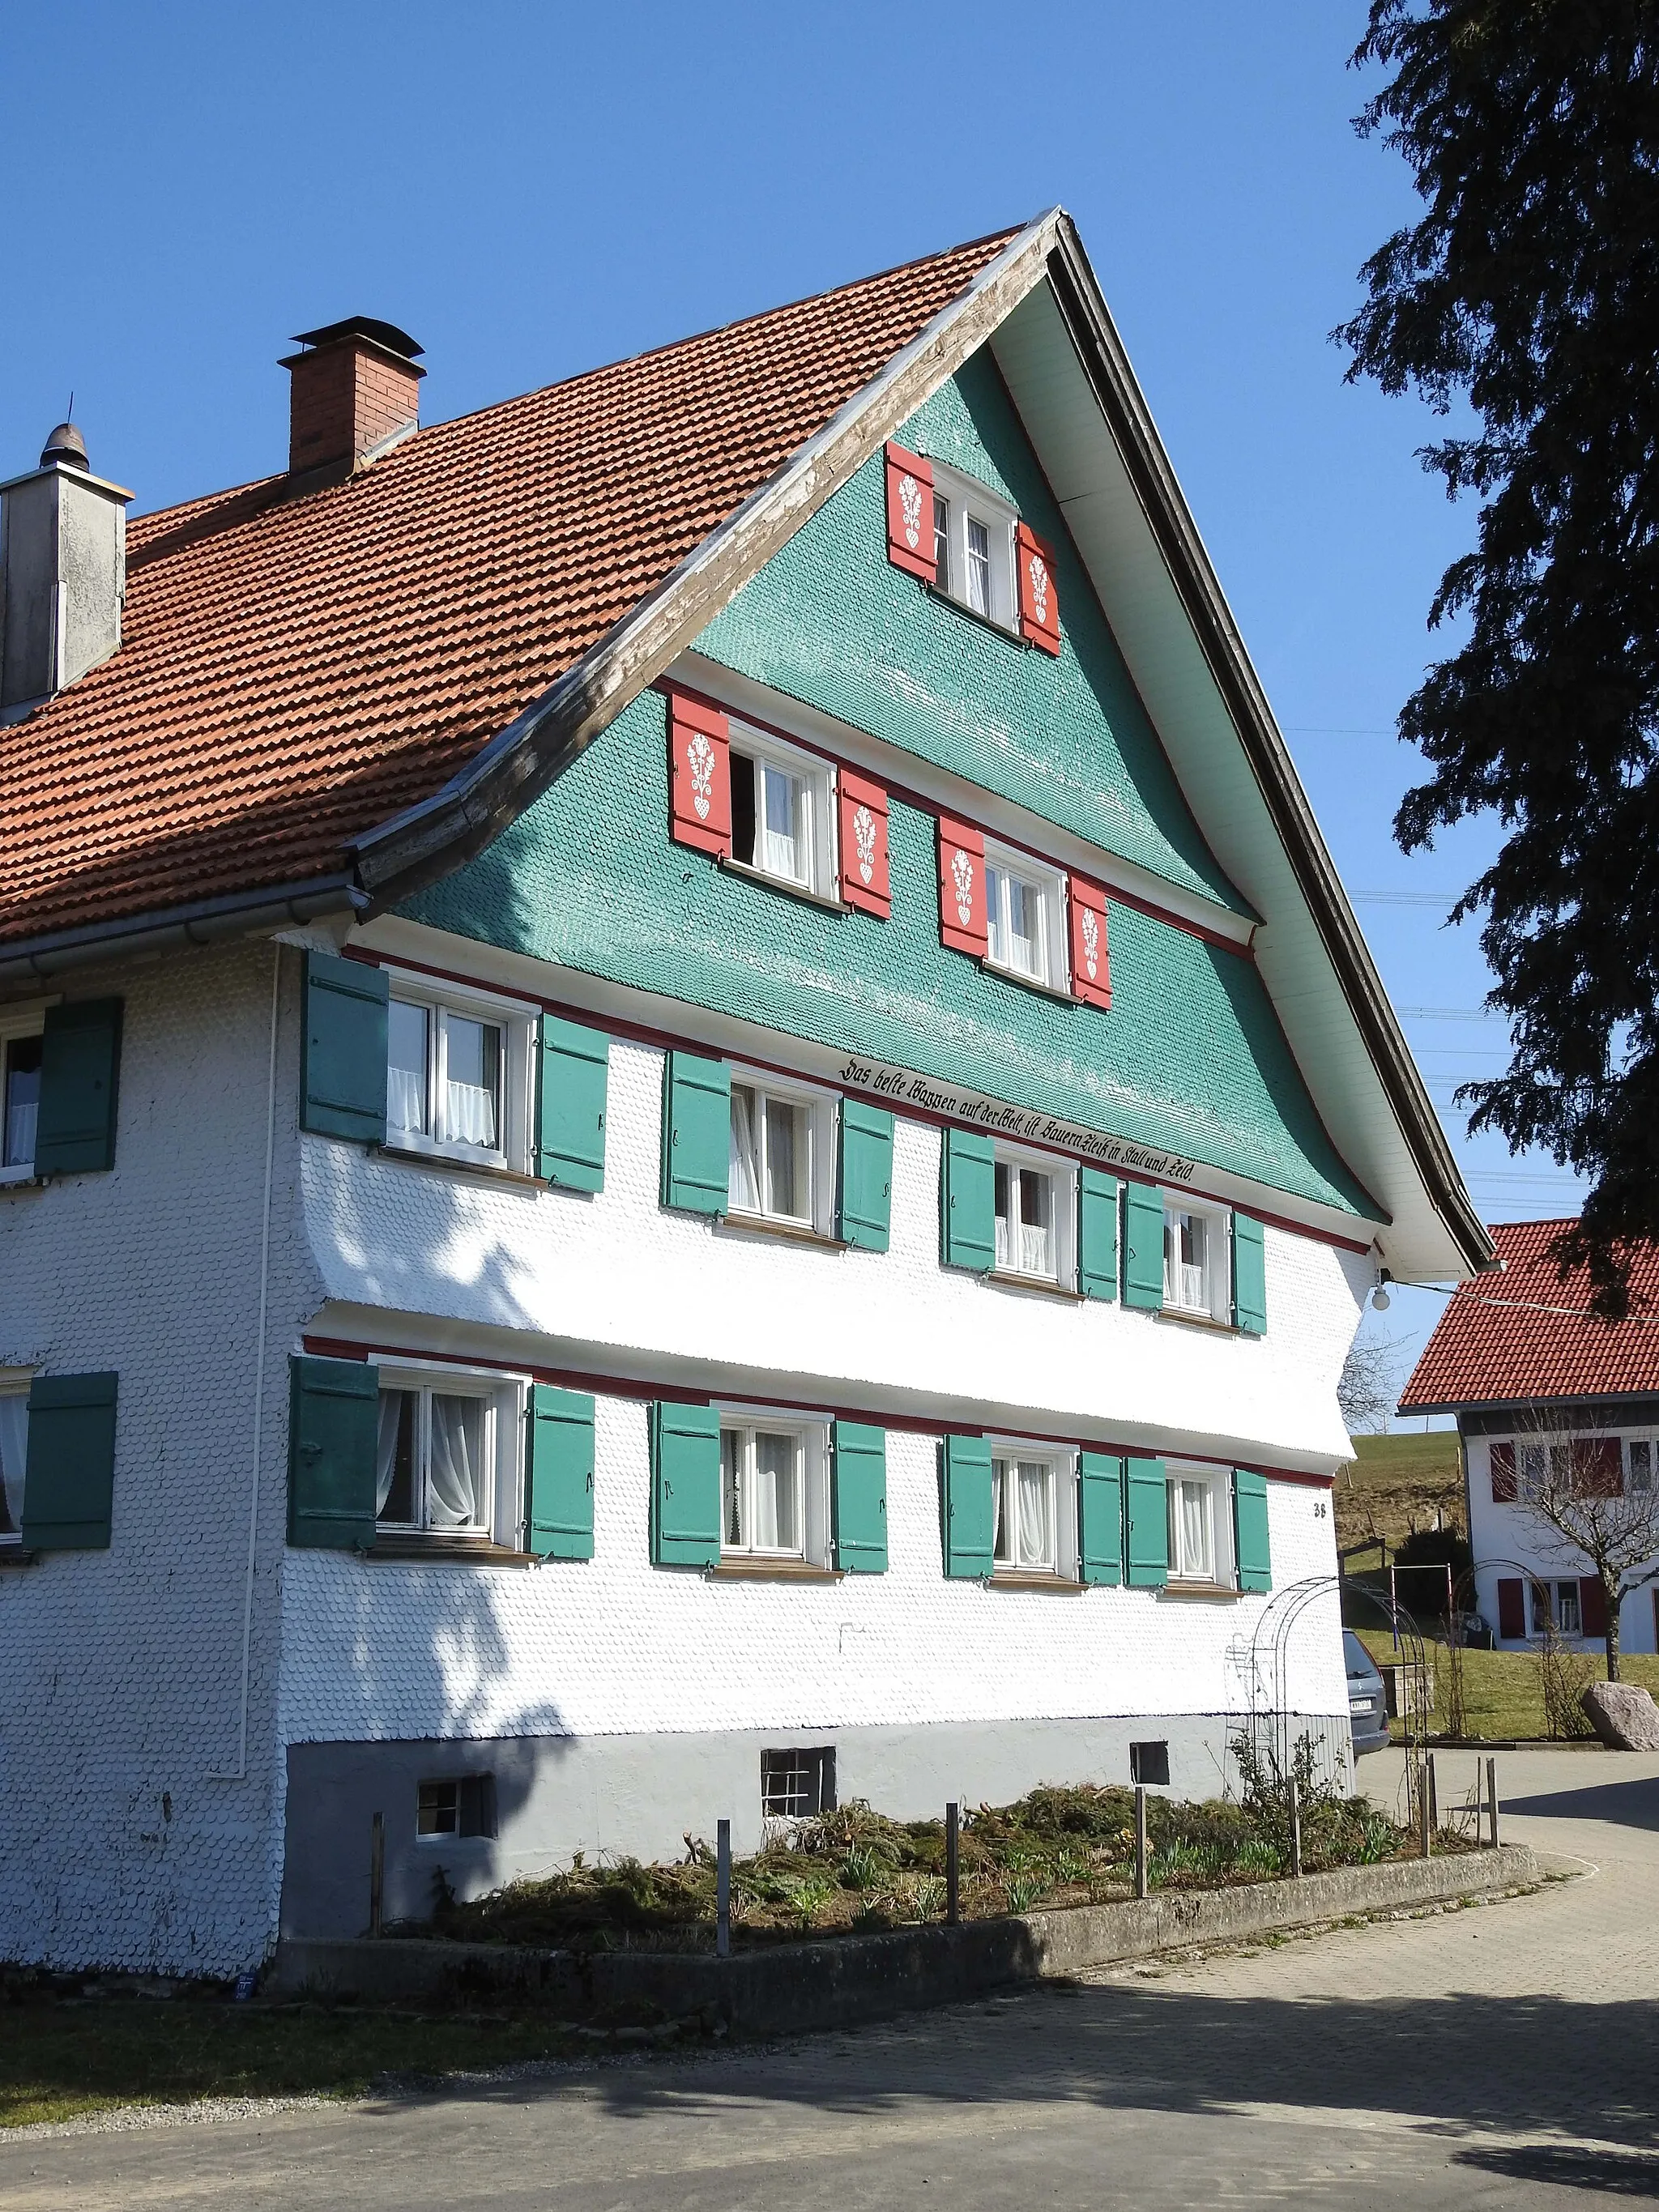 Photo showing: Typisches Westallgäuer Bauernhaus in Haus mit Klebdächern